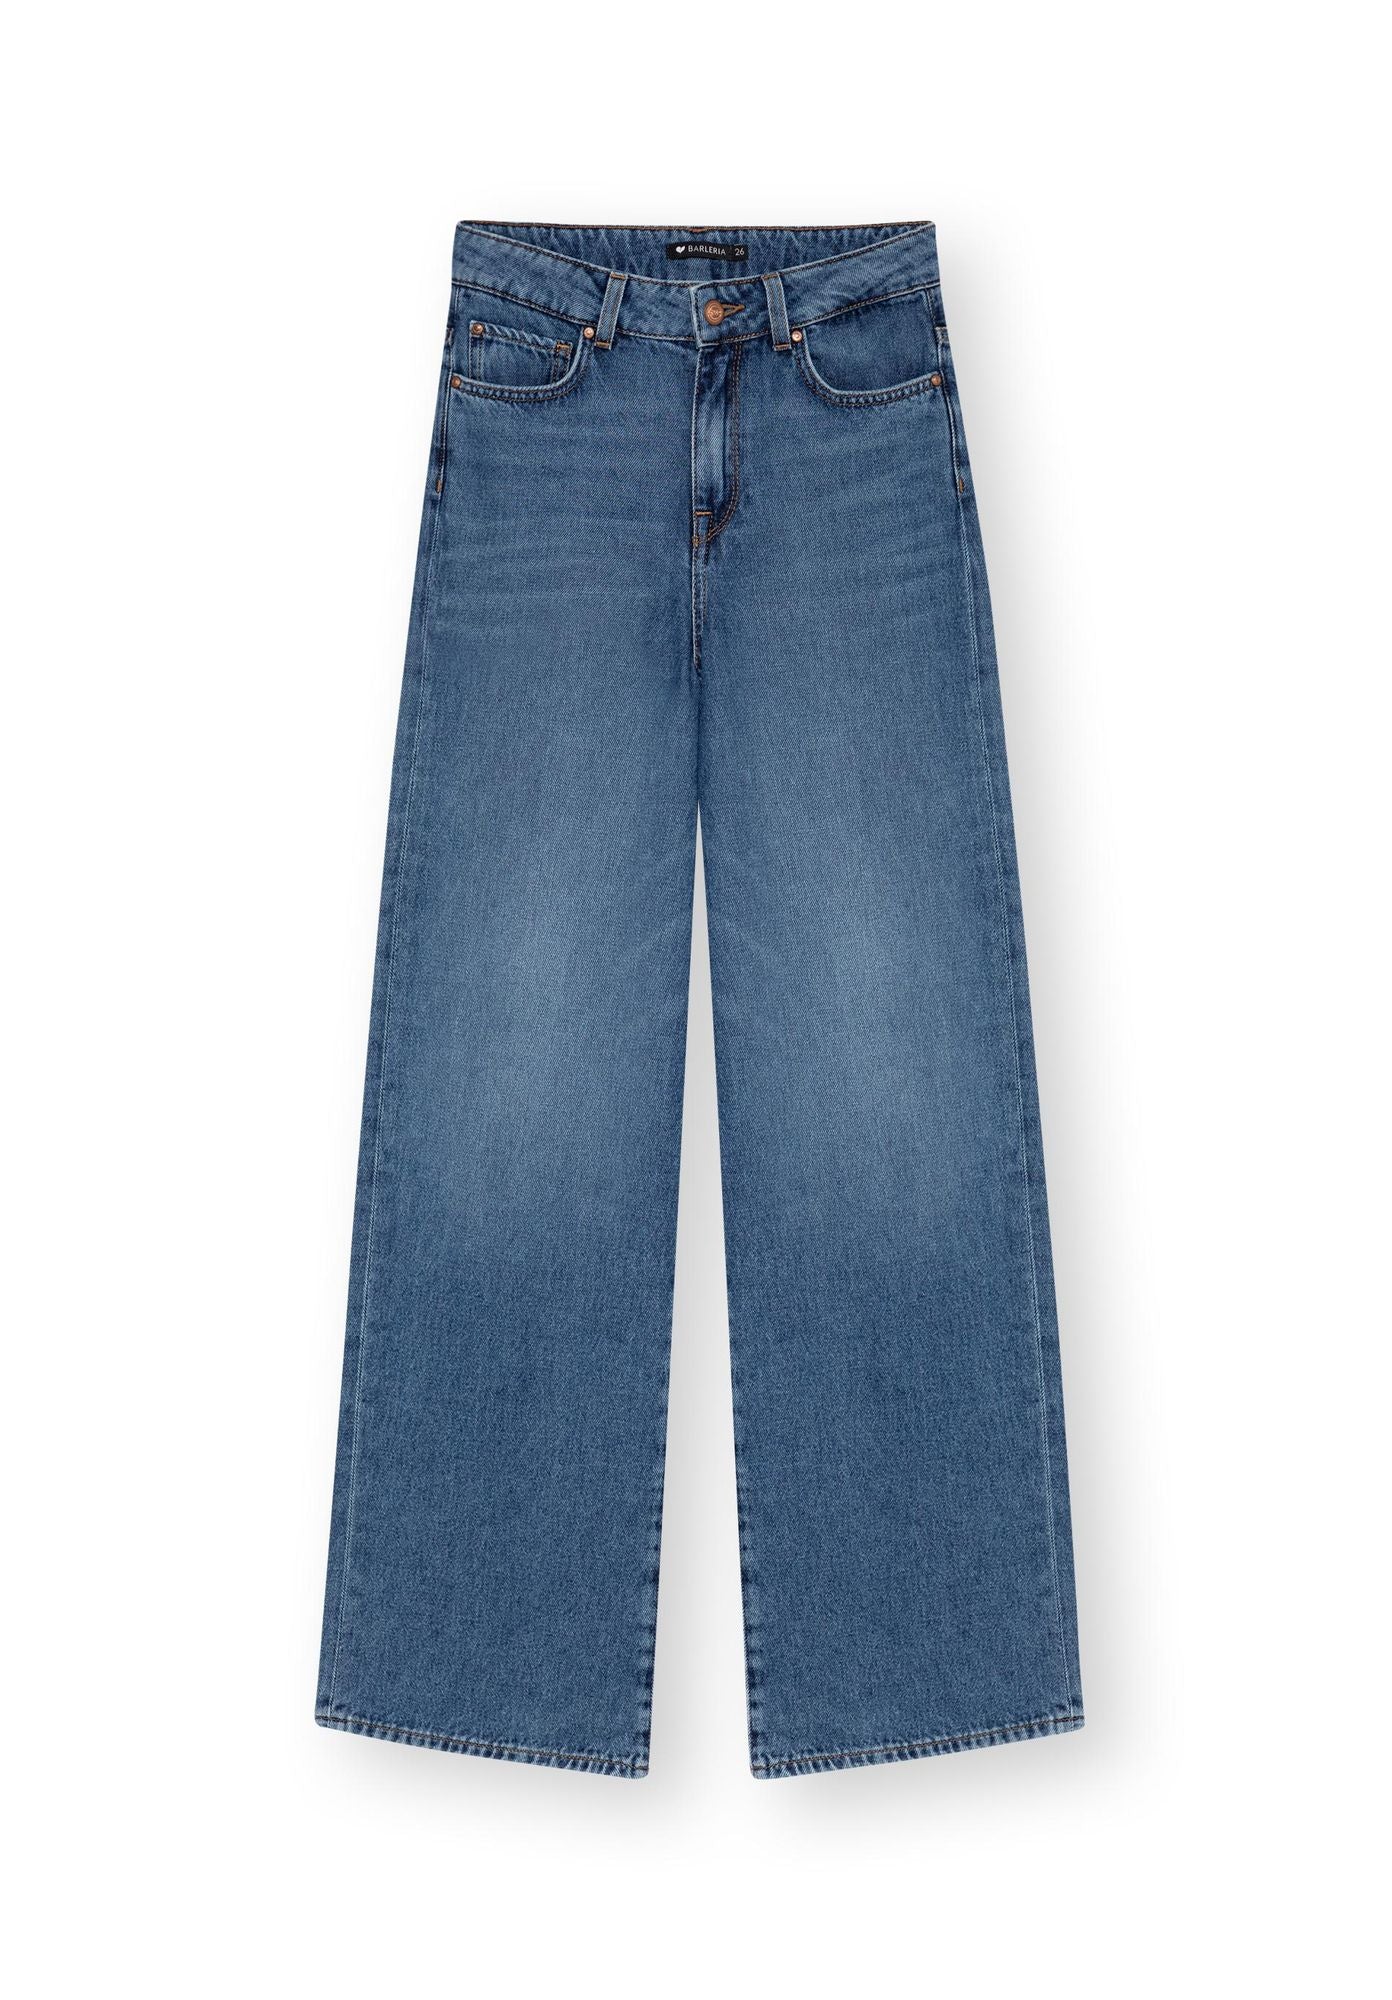 Jeans BARLERIA in blau von LOVJOI aus Bio-Baumwolle